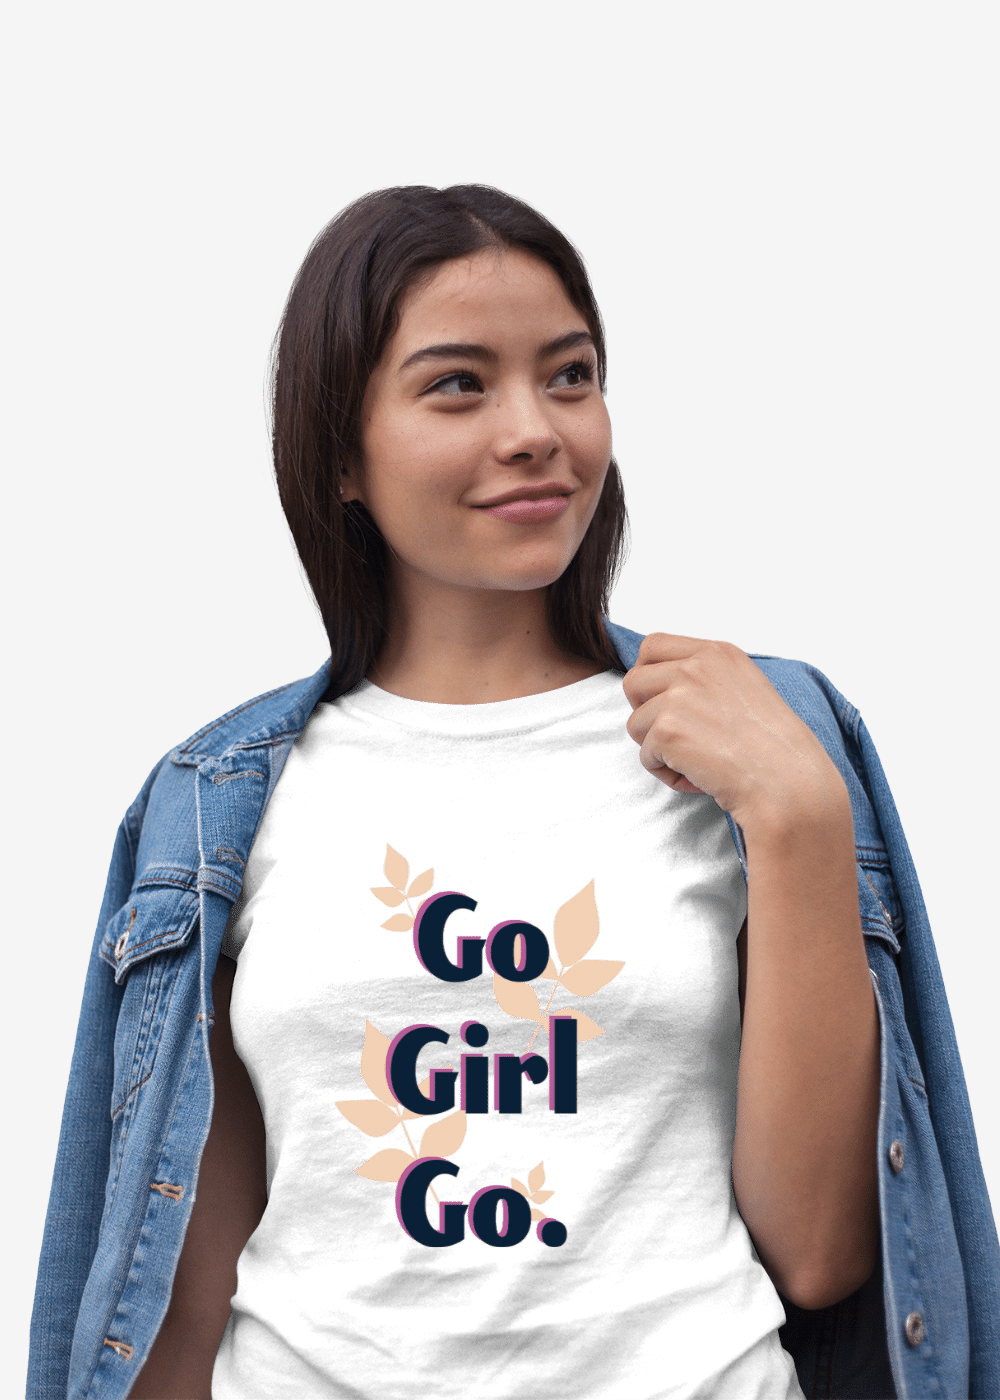 Women's Best T-Shirt | Motivational Graphic Tee for Women